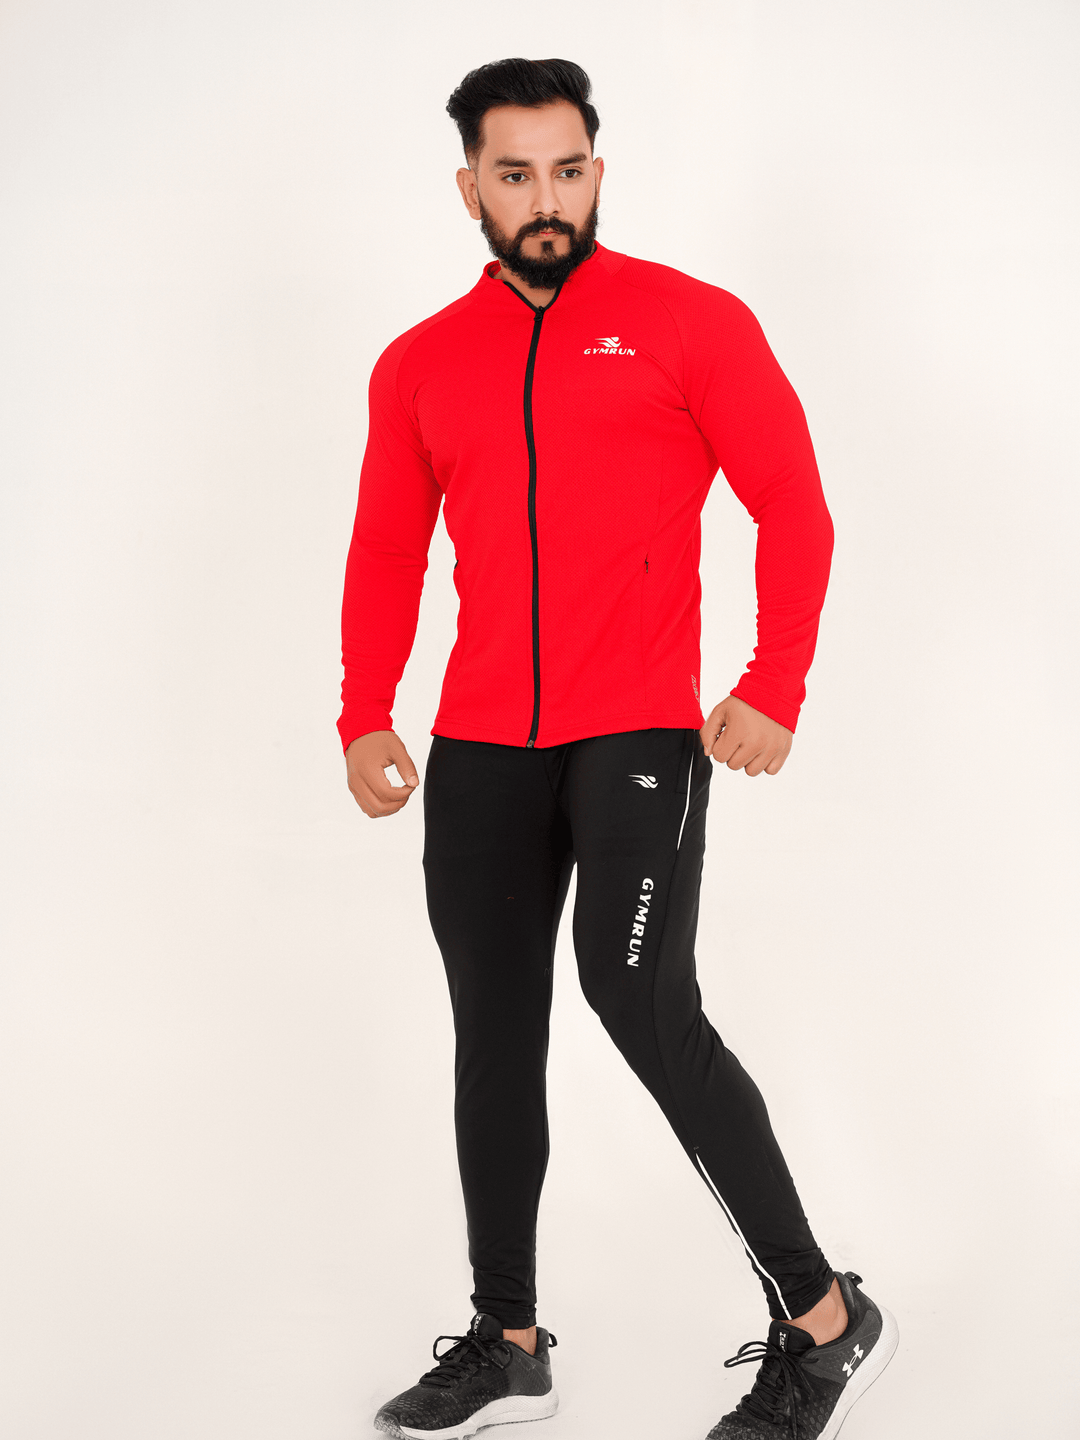 FlexFit Urban Jacket - Red - GYMRUN Activewear